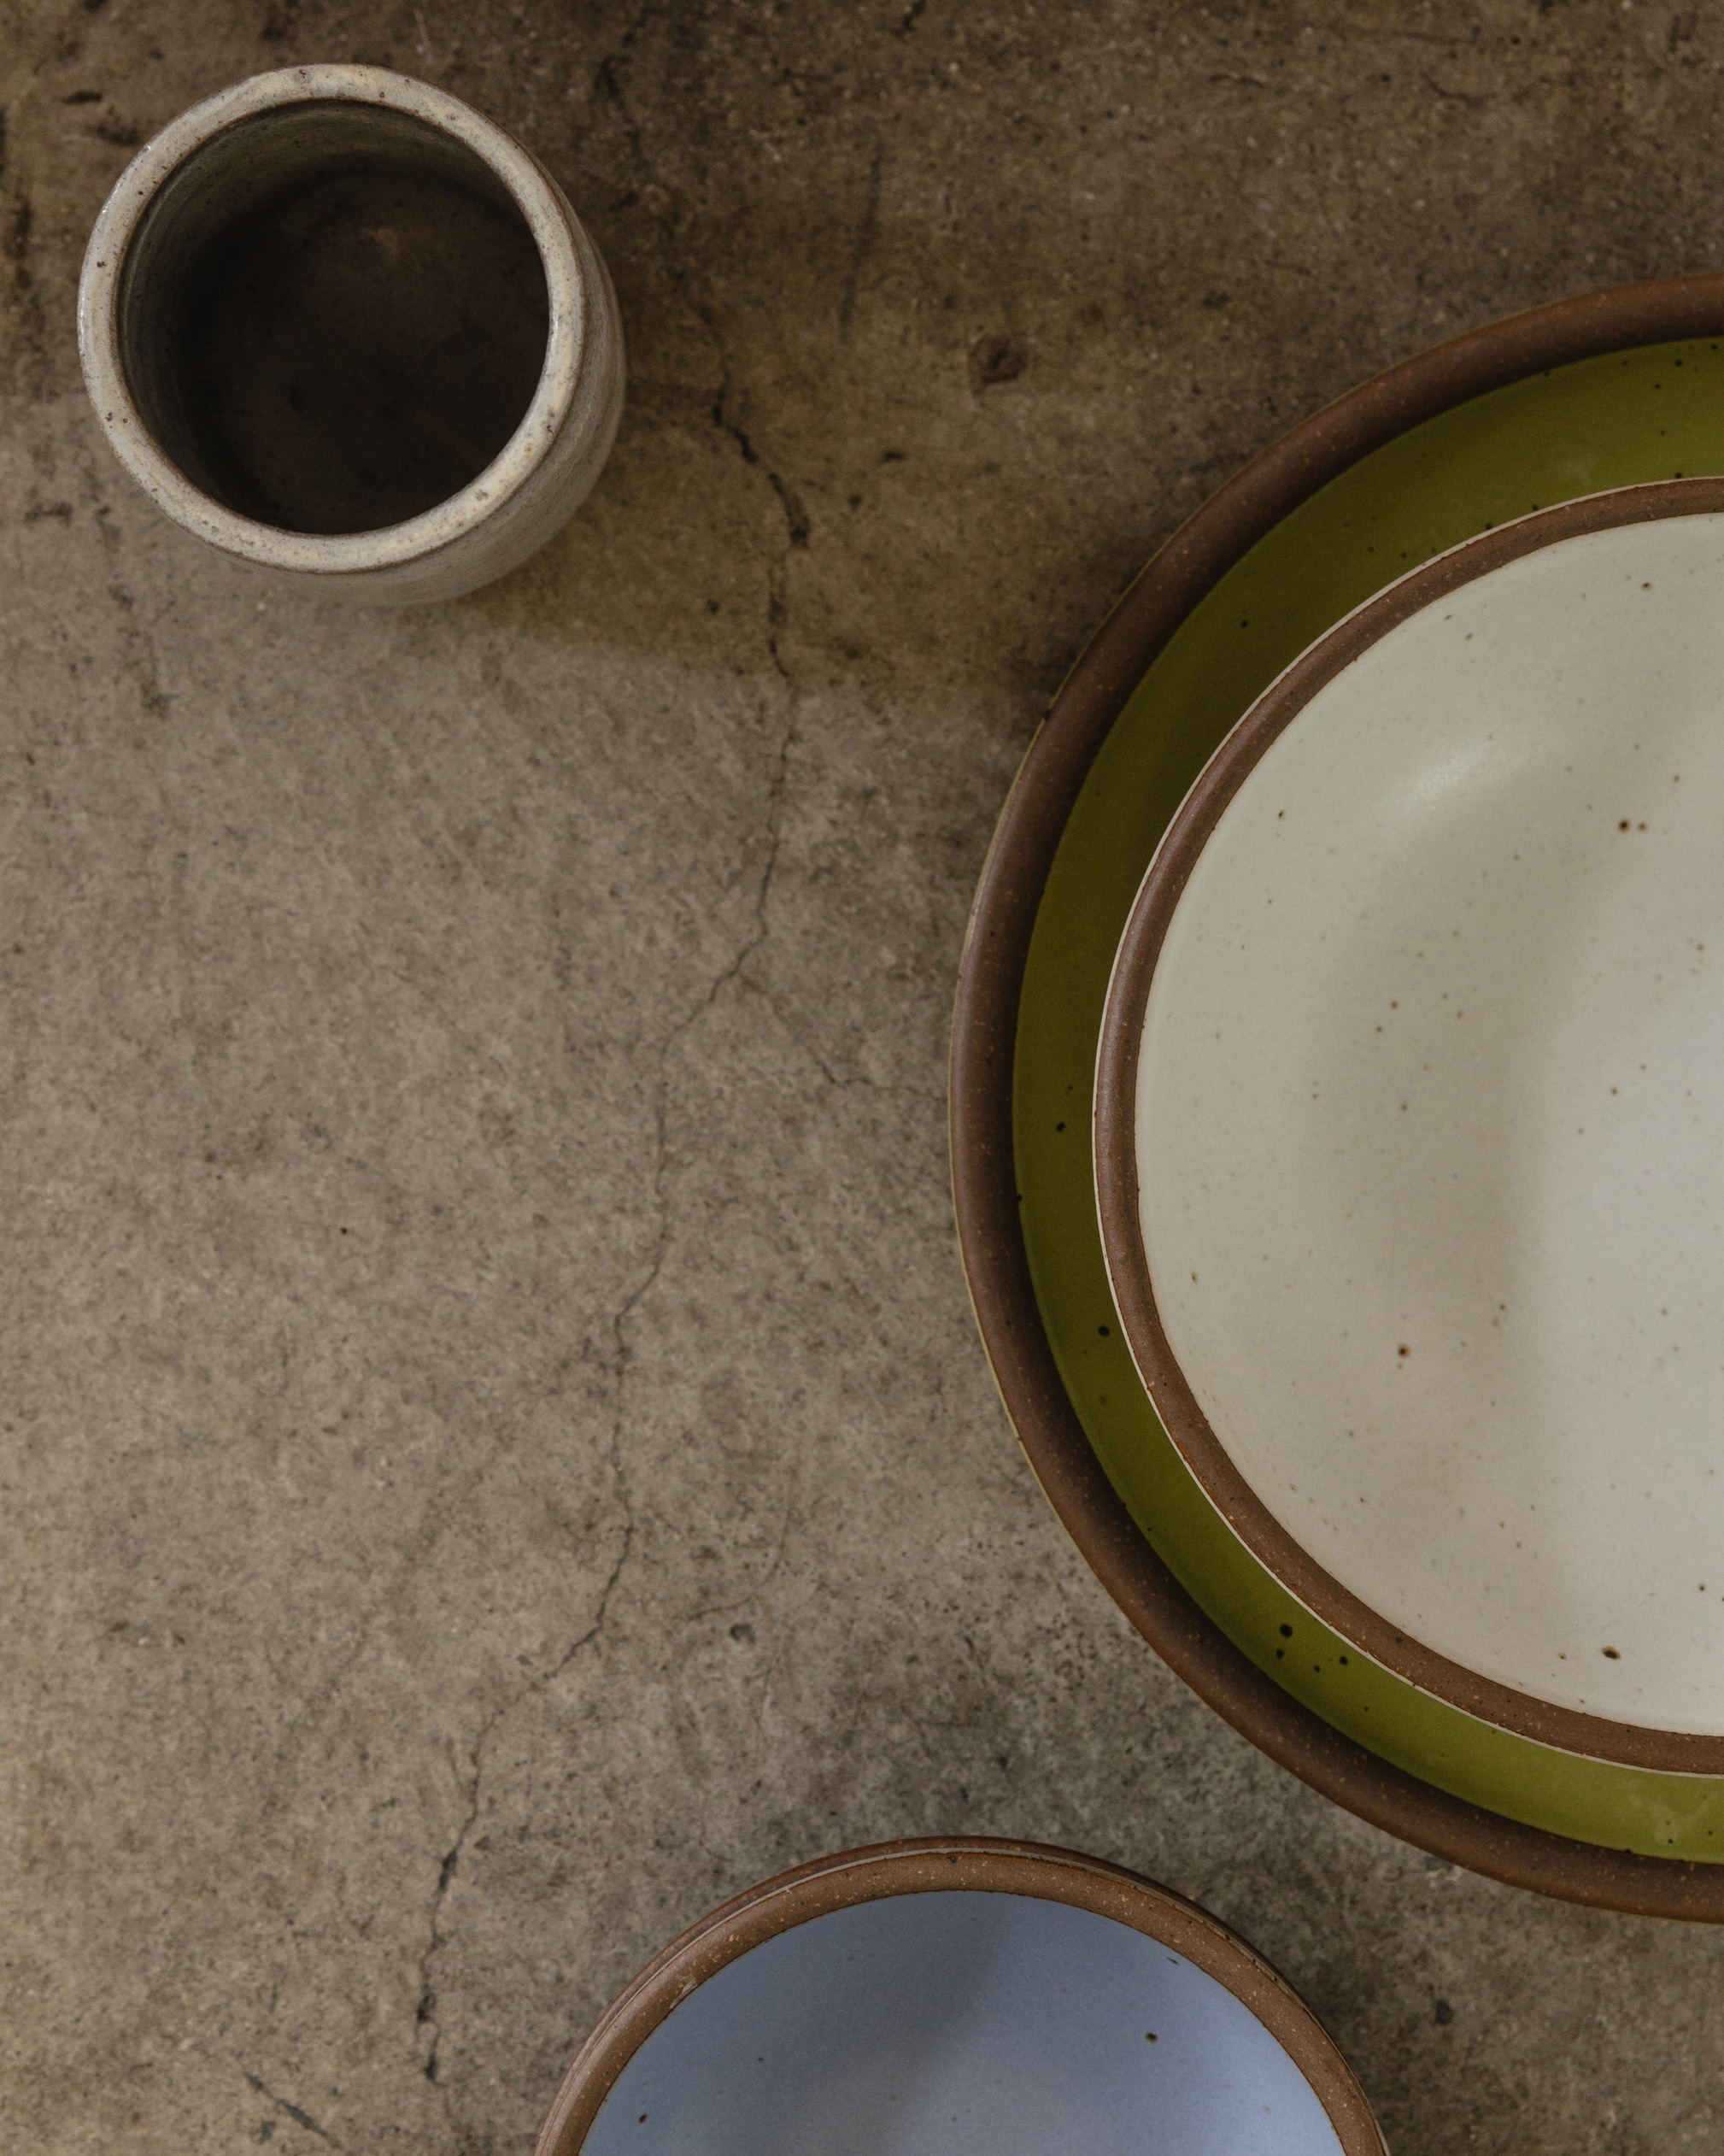 Two ceramic plates and a mug